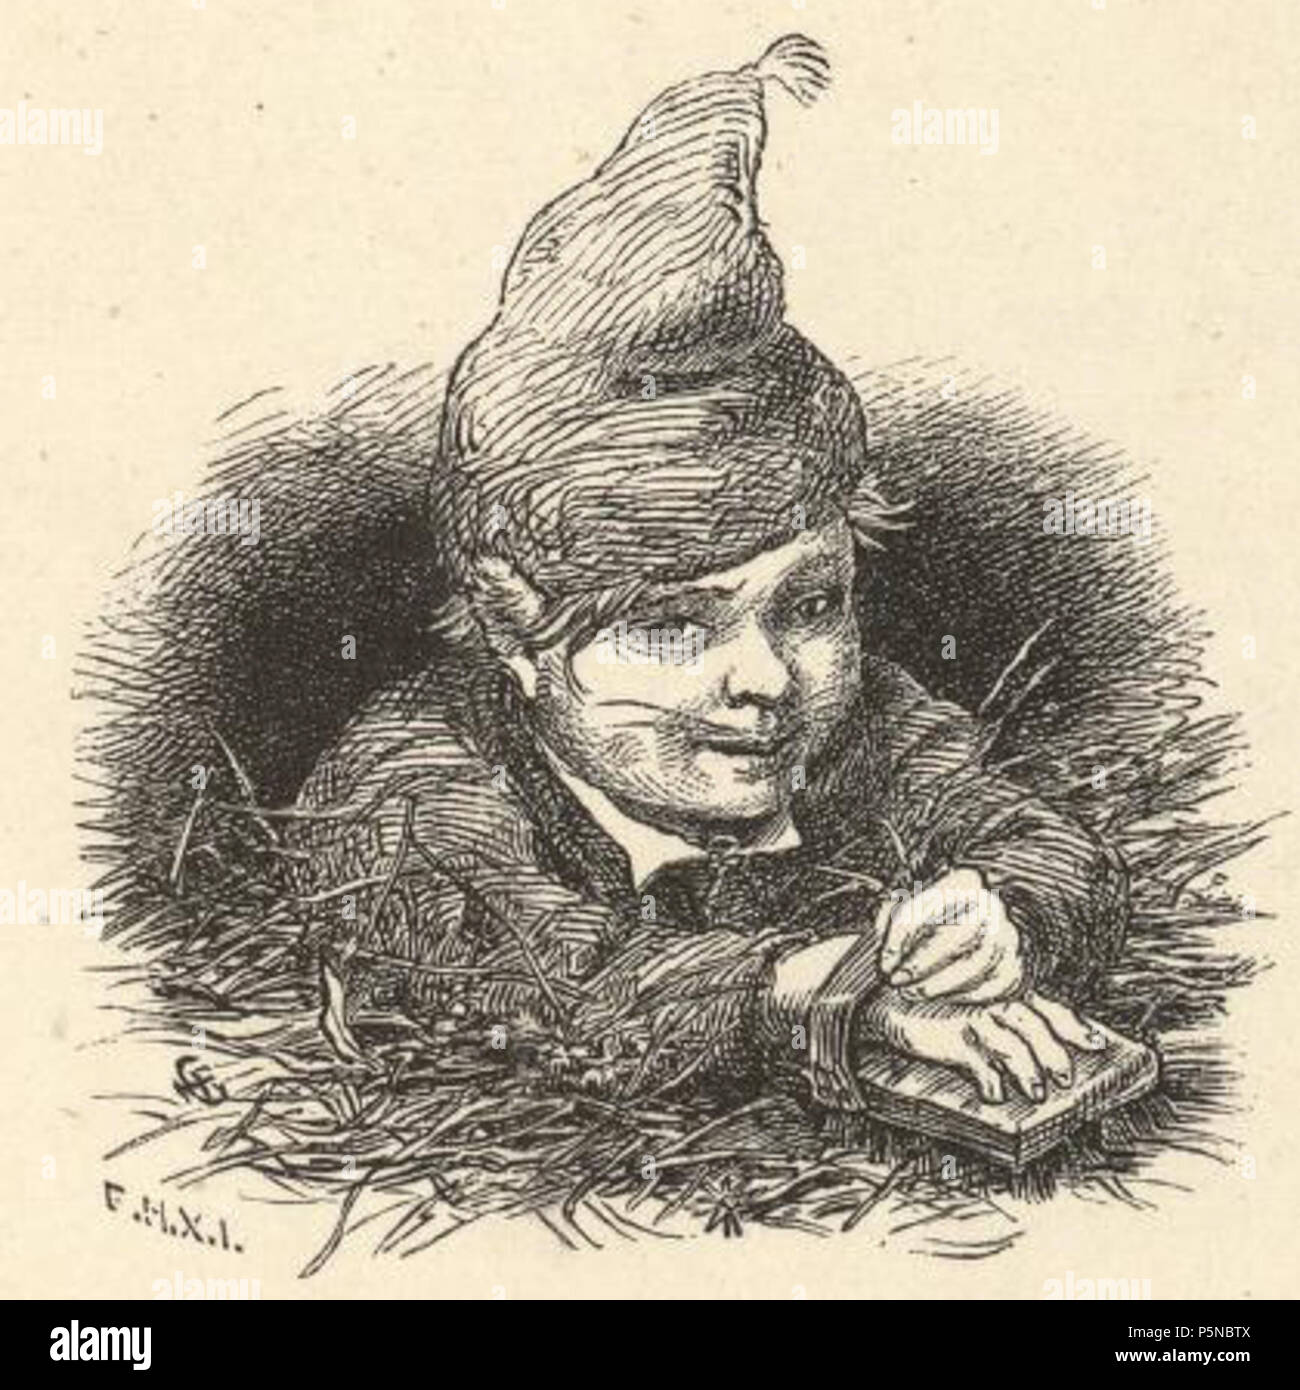 142 Asbjornsen ed., Norske folke- og huldre-eventyr 1879, inset art by Hans F Gude (d. 1903) Stock Photo